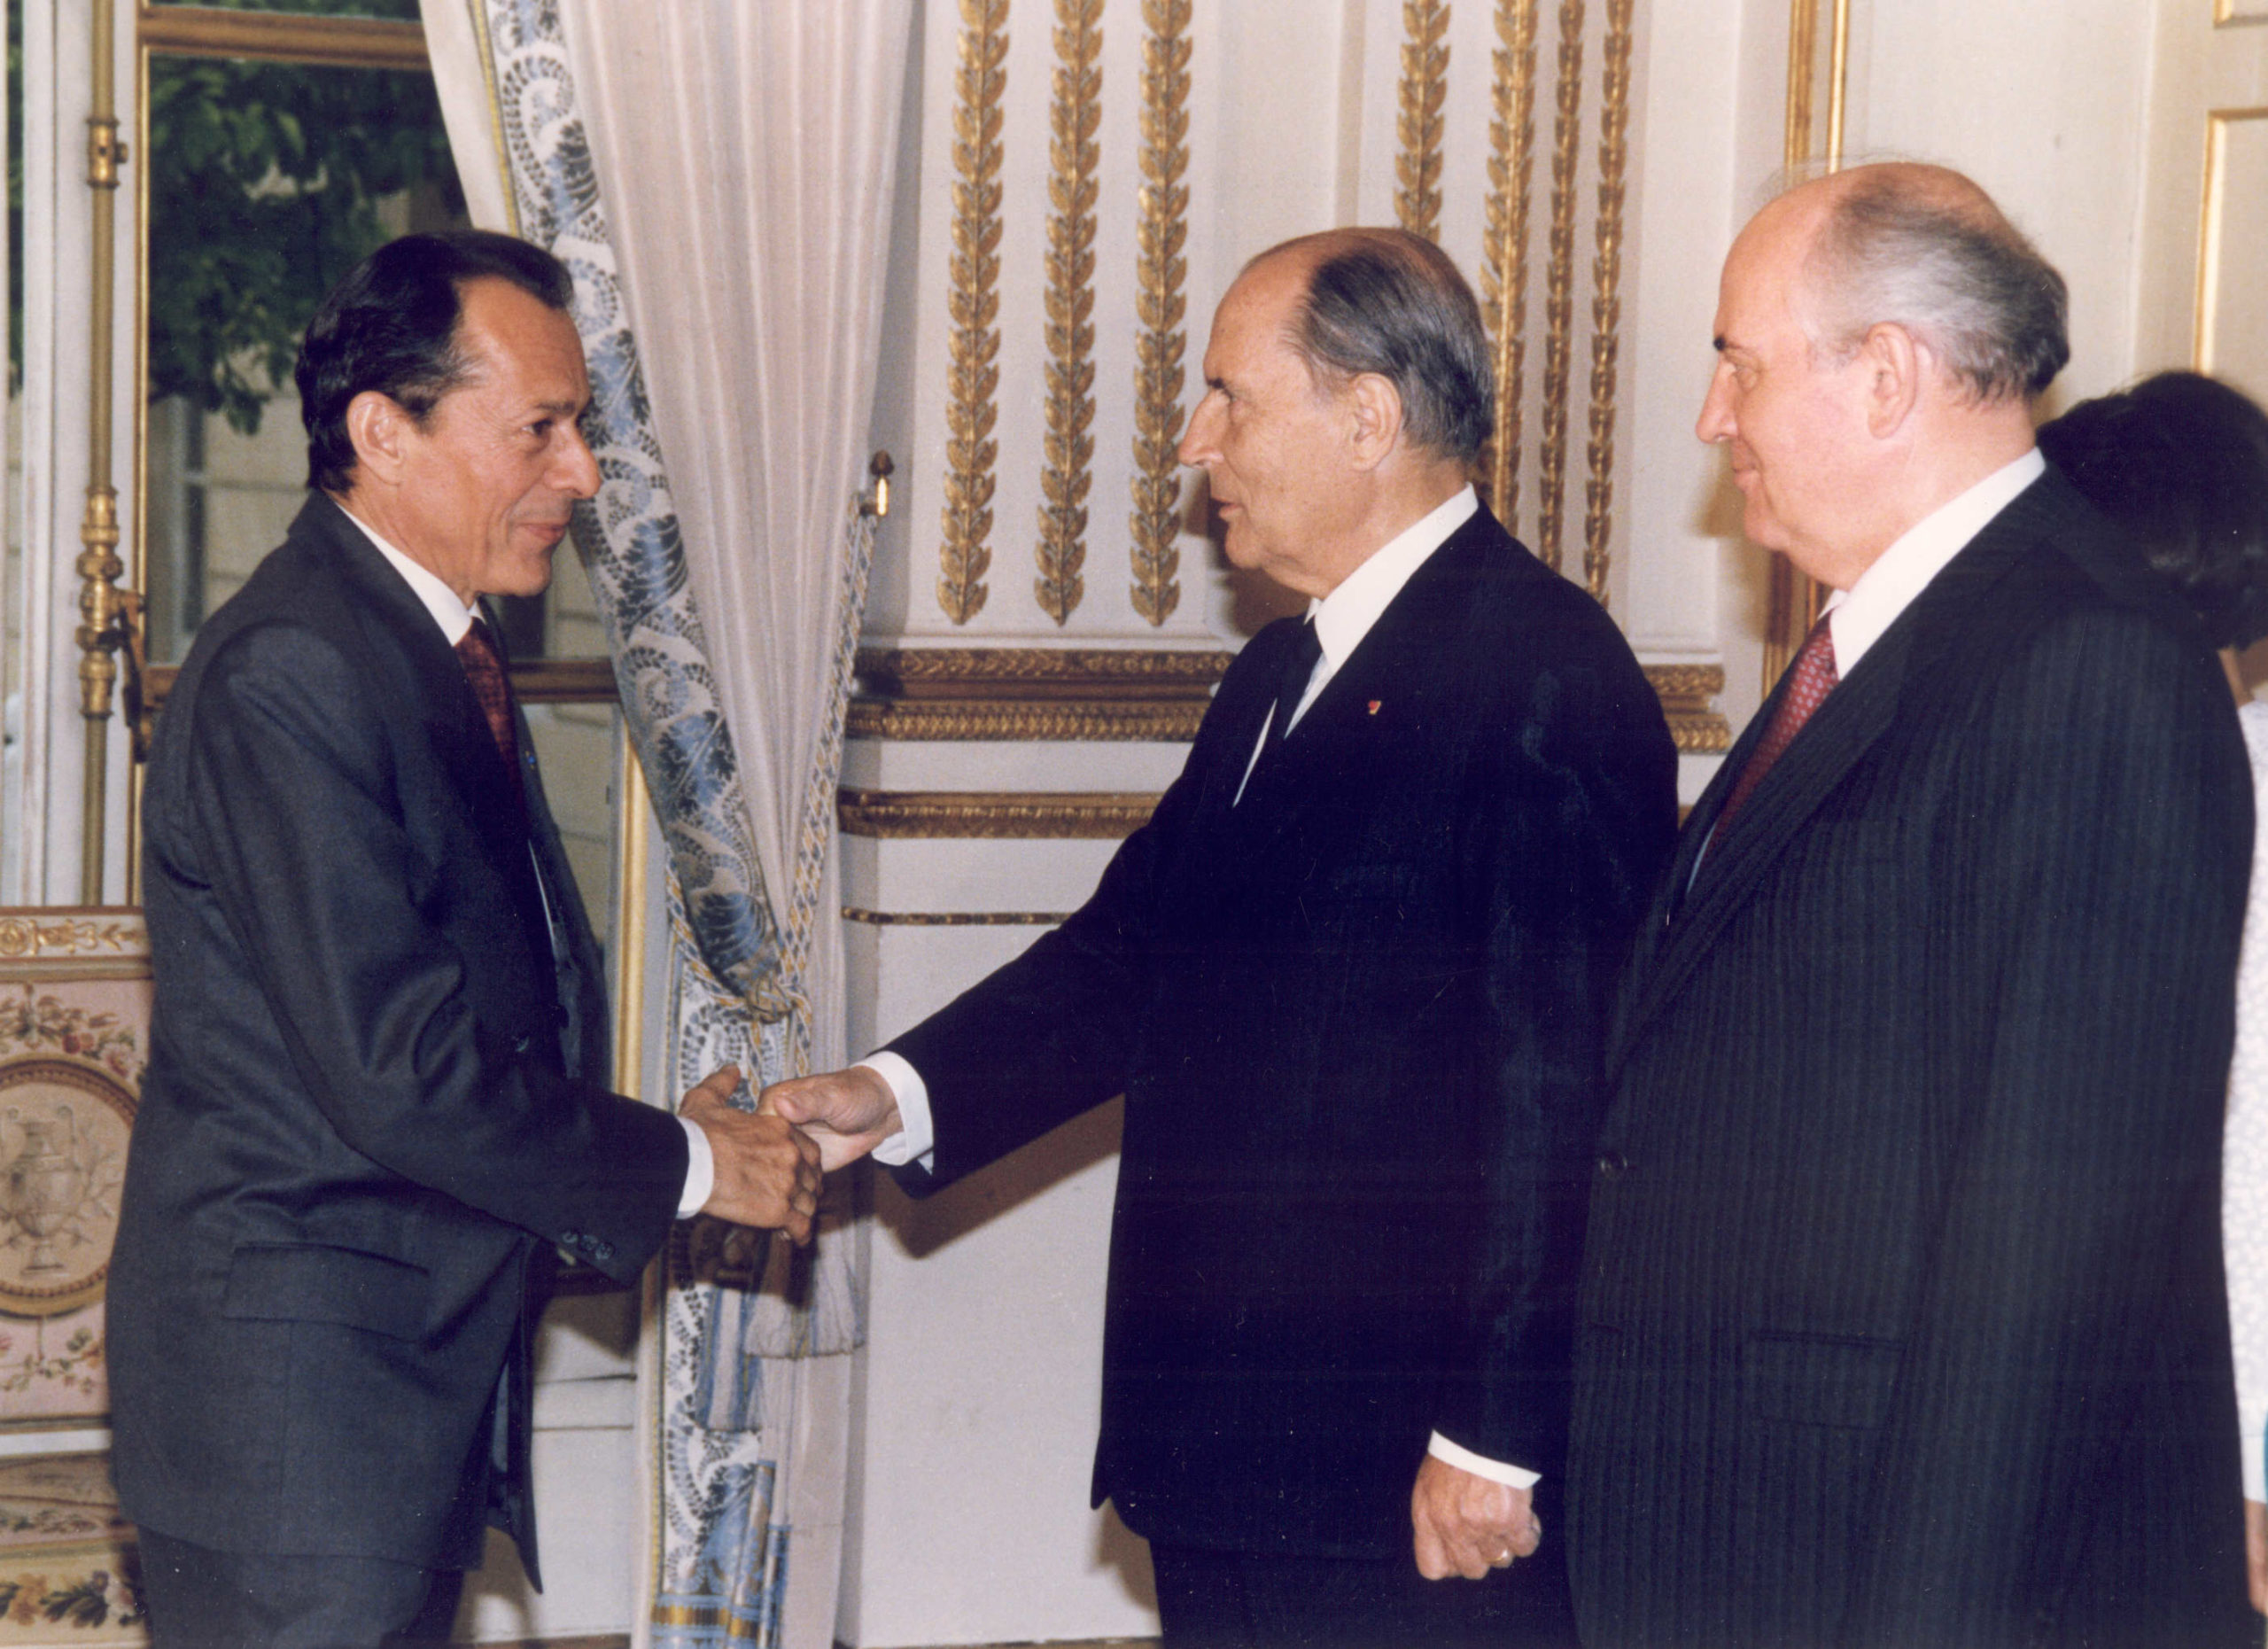 Le Président François Mitterrand présente Michel Rocard, Premier ministre